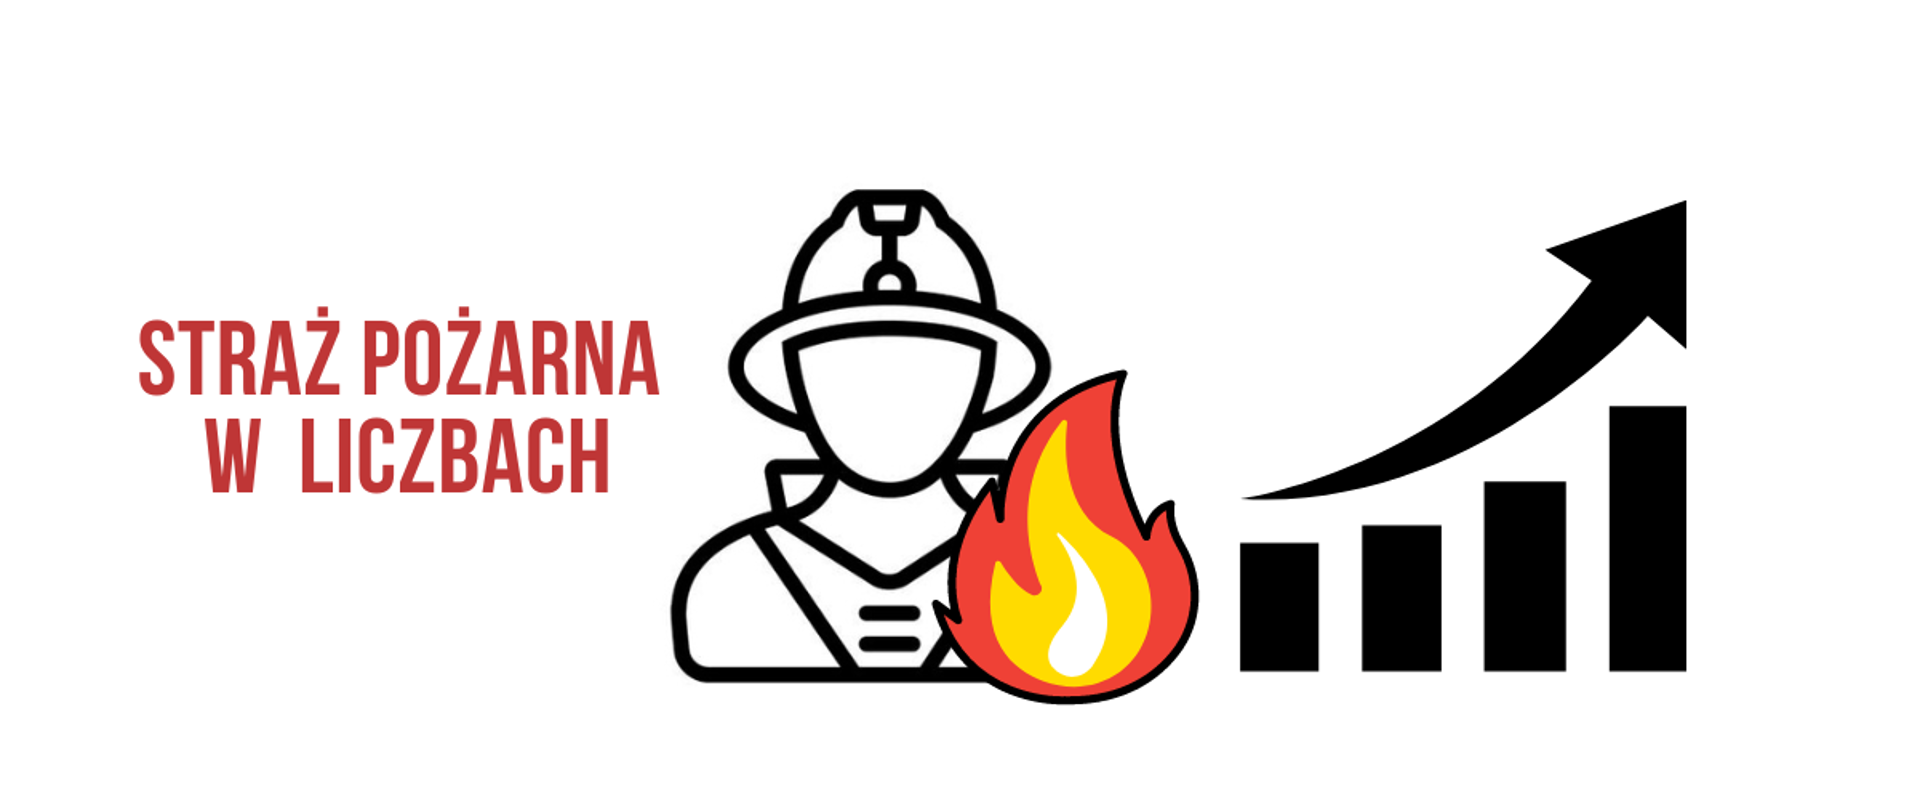 baner - straż pożarna w liczbach - ikona strażaka z płomieniem i wykres graficzny